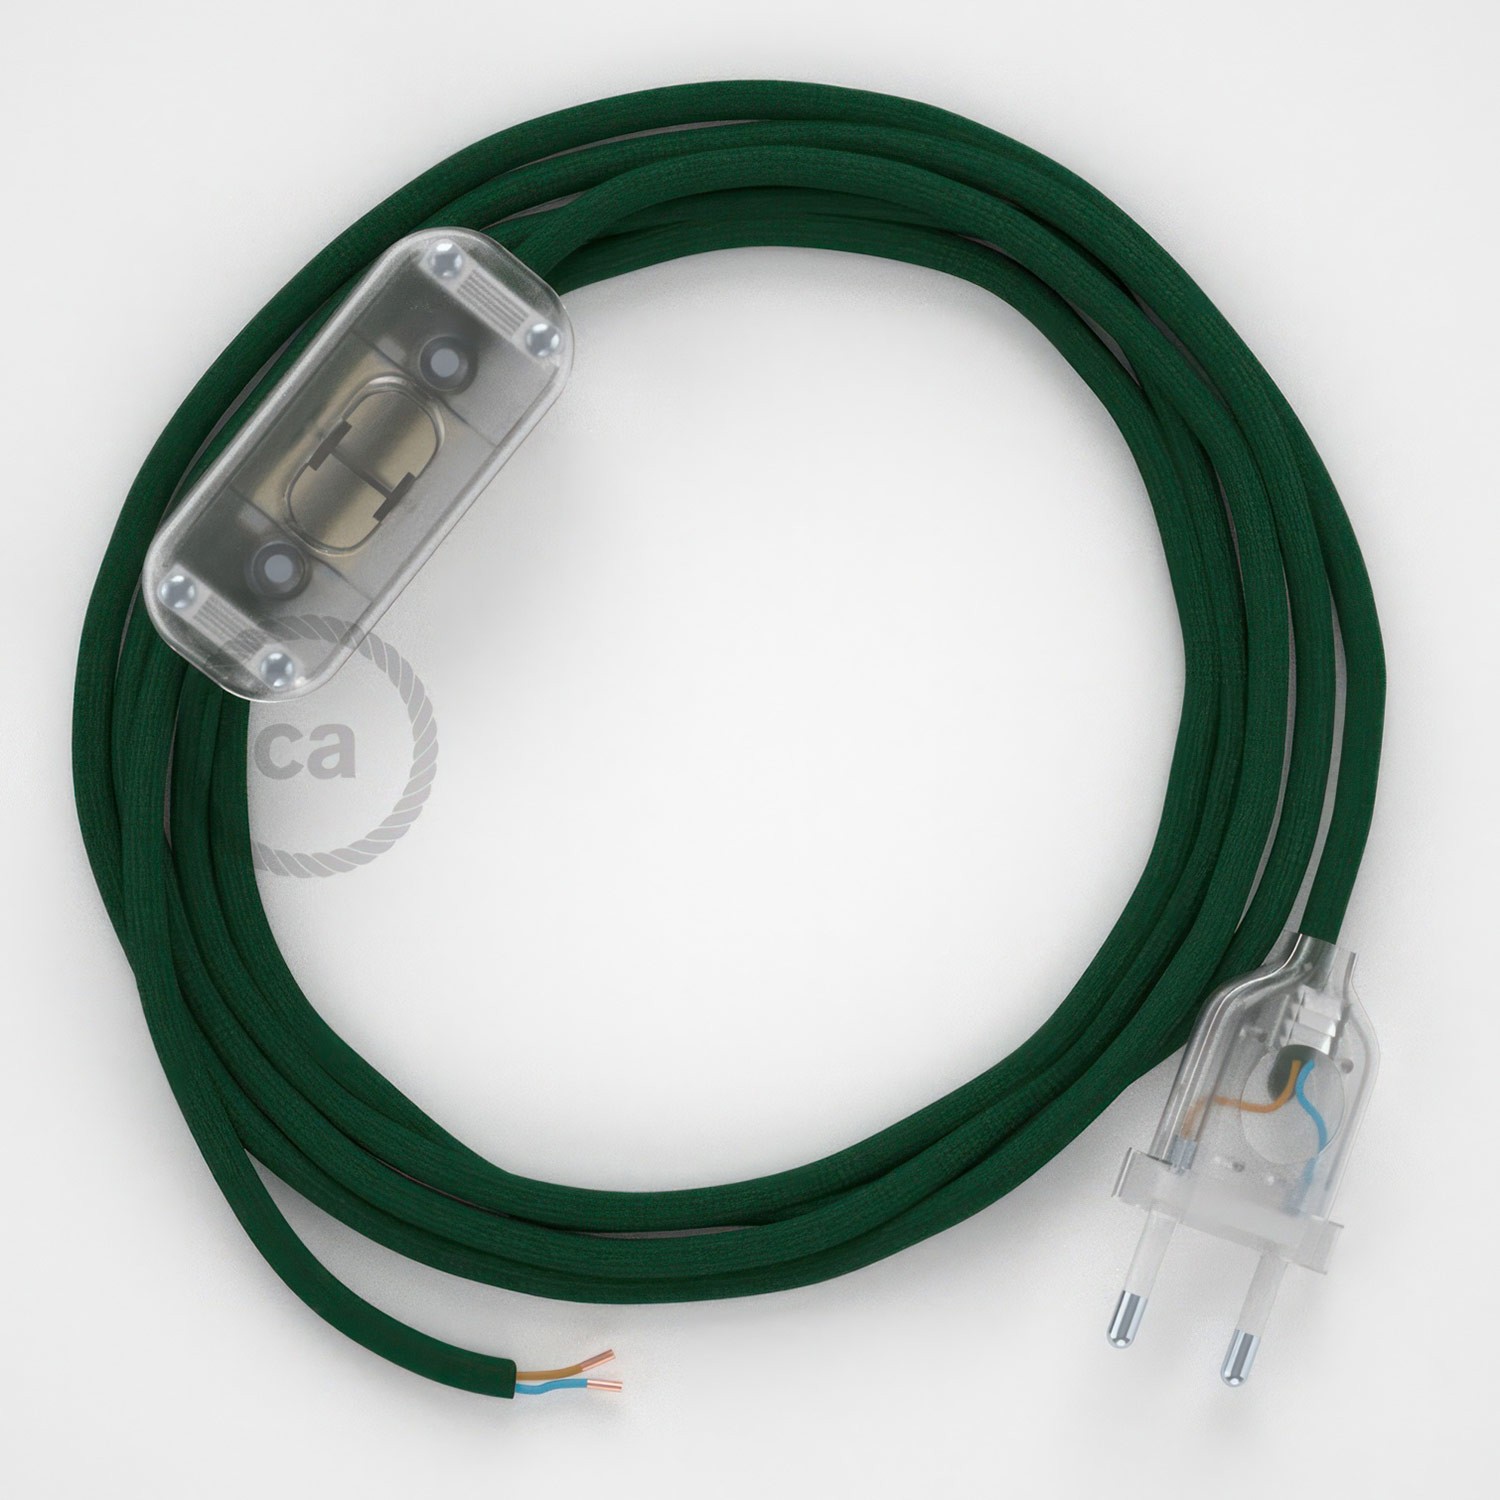 Cableado para lámpara, cable RM21 Efecto Seda Verde Oscuro 1,8m. Elige tu el color de la clavija y del interruptor!